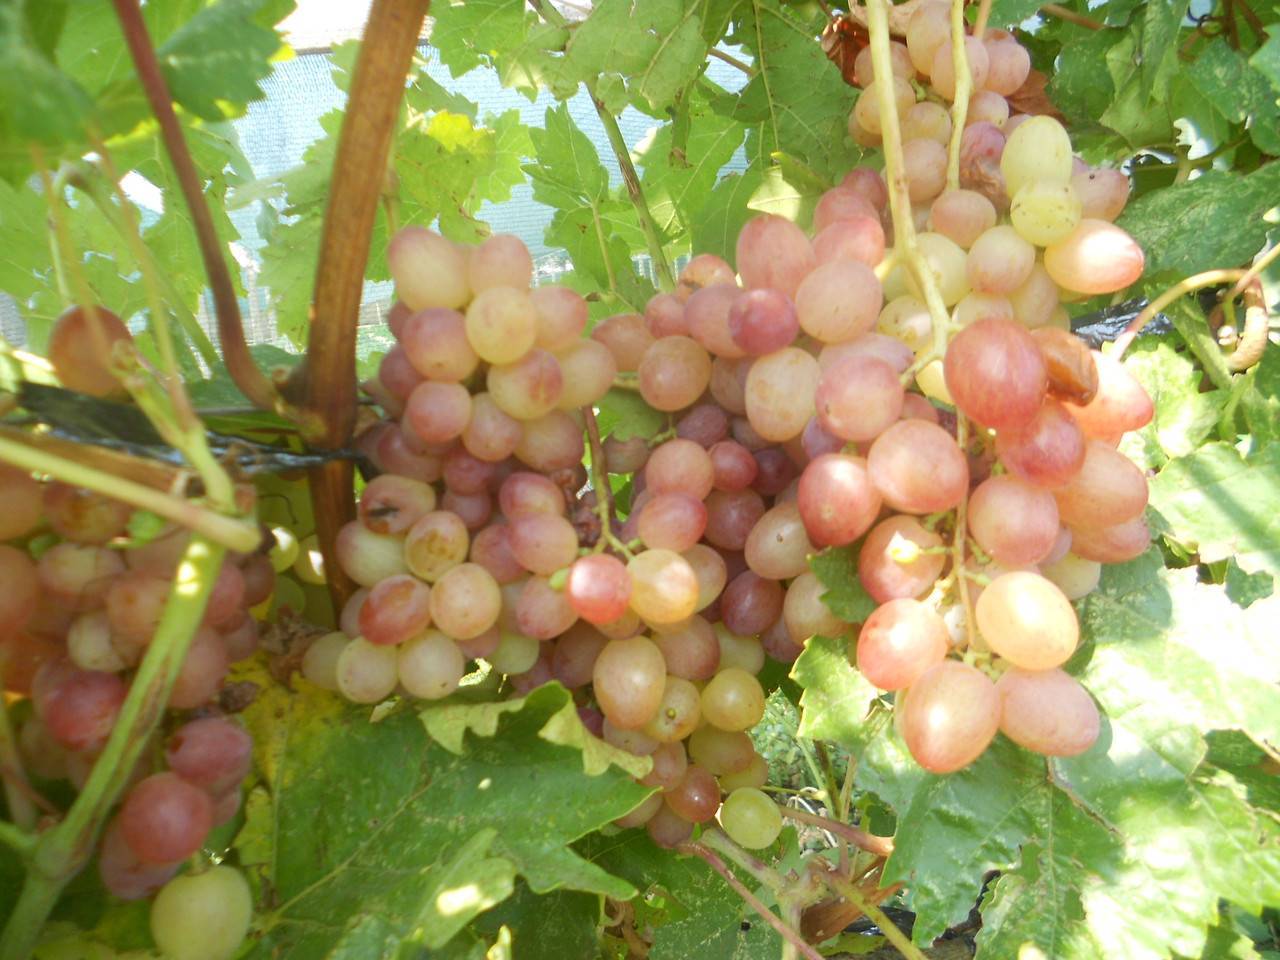 Лучшие сорта винограда для подмосковья - 20 самых вкусных, морозостойких